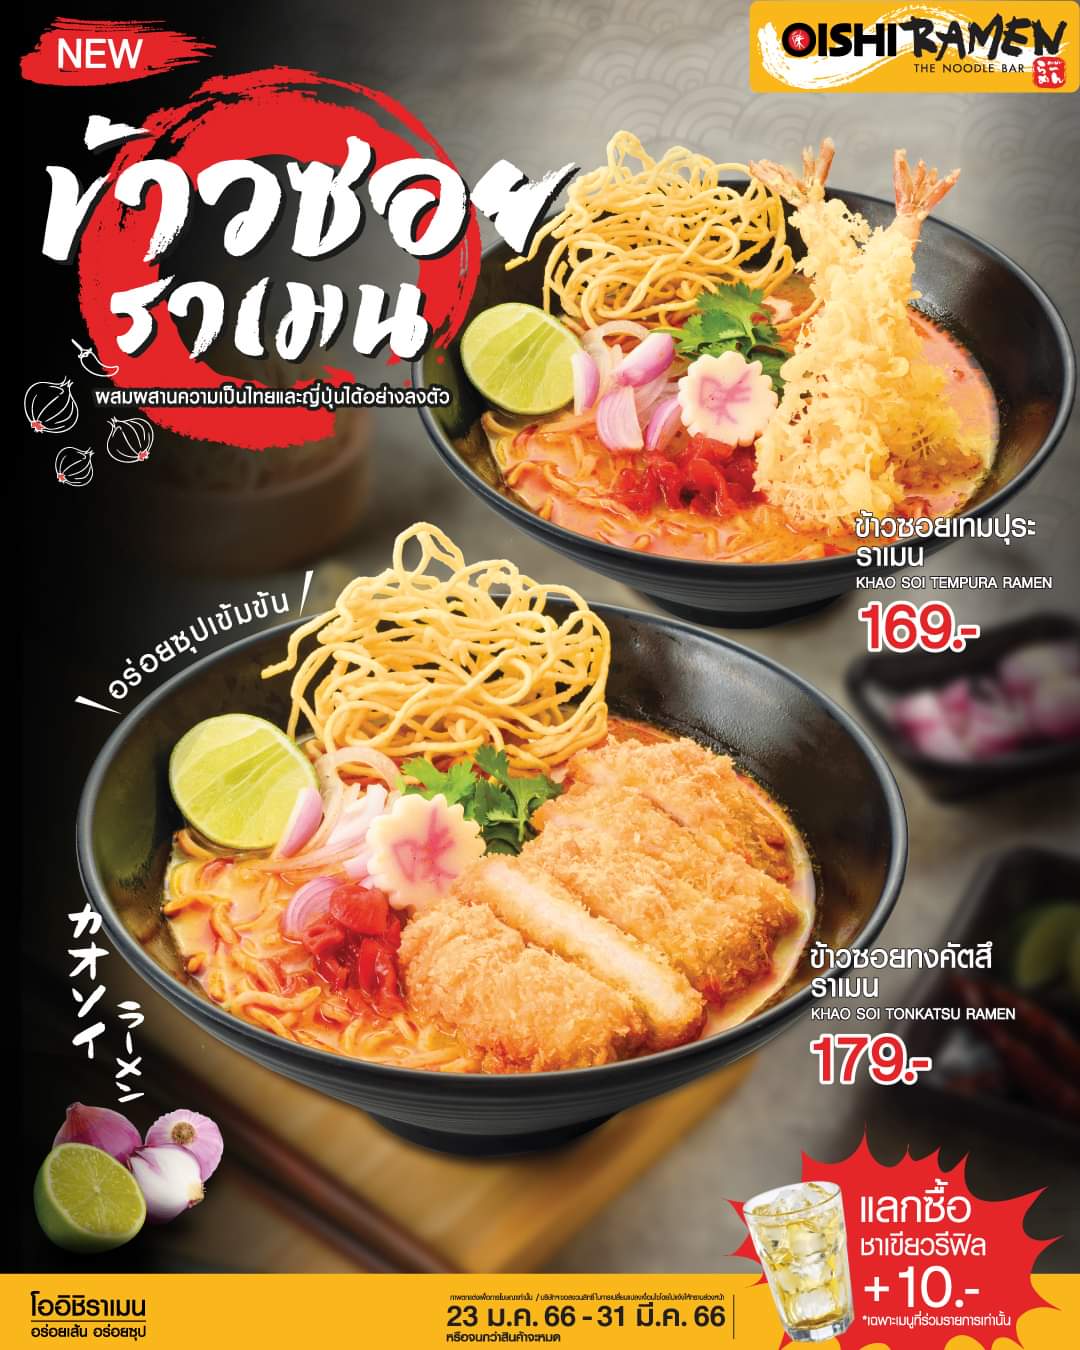 โปรโมชั่น โออิชิ : แนะนำความอร่อยใหม่ #สไตล์ไทยญี่ปุ่น "ข้าวซอยราเมน"